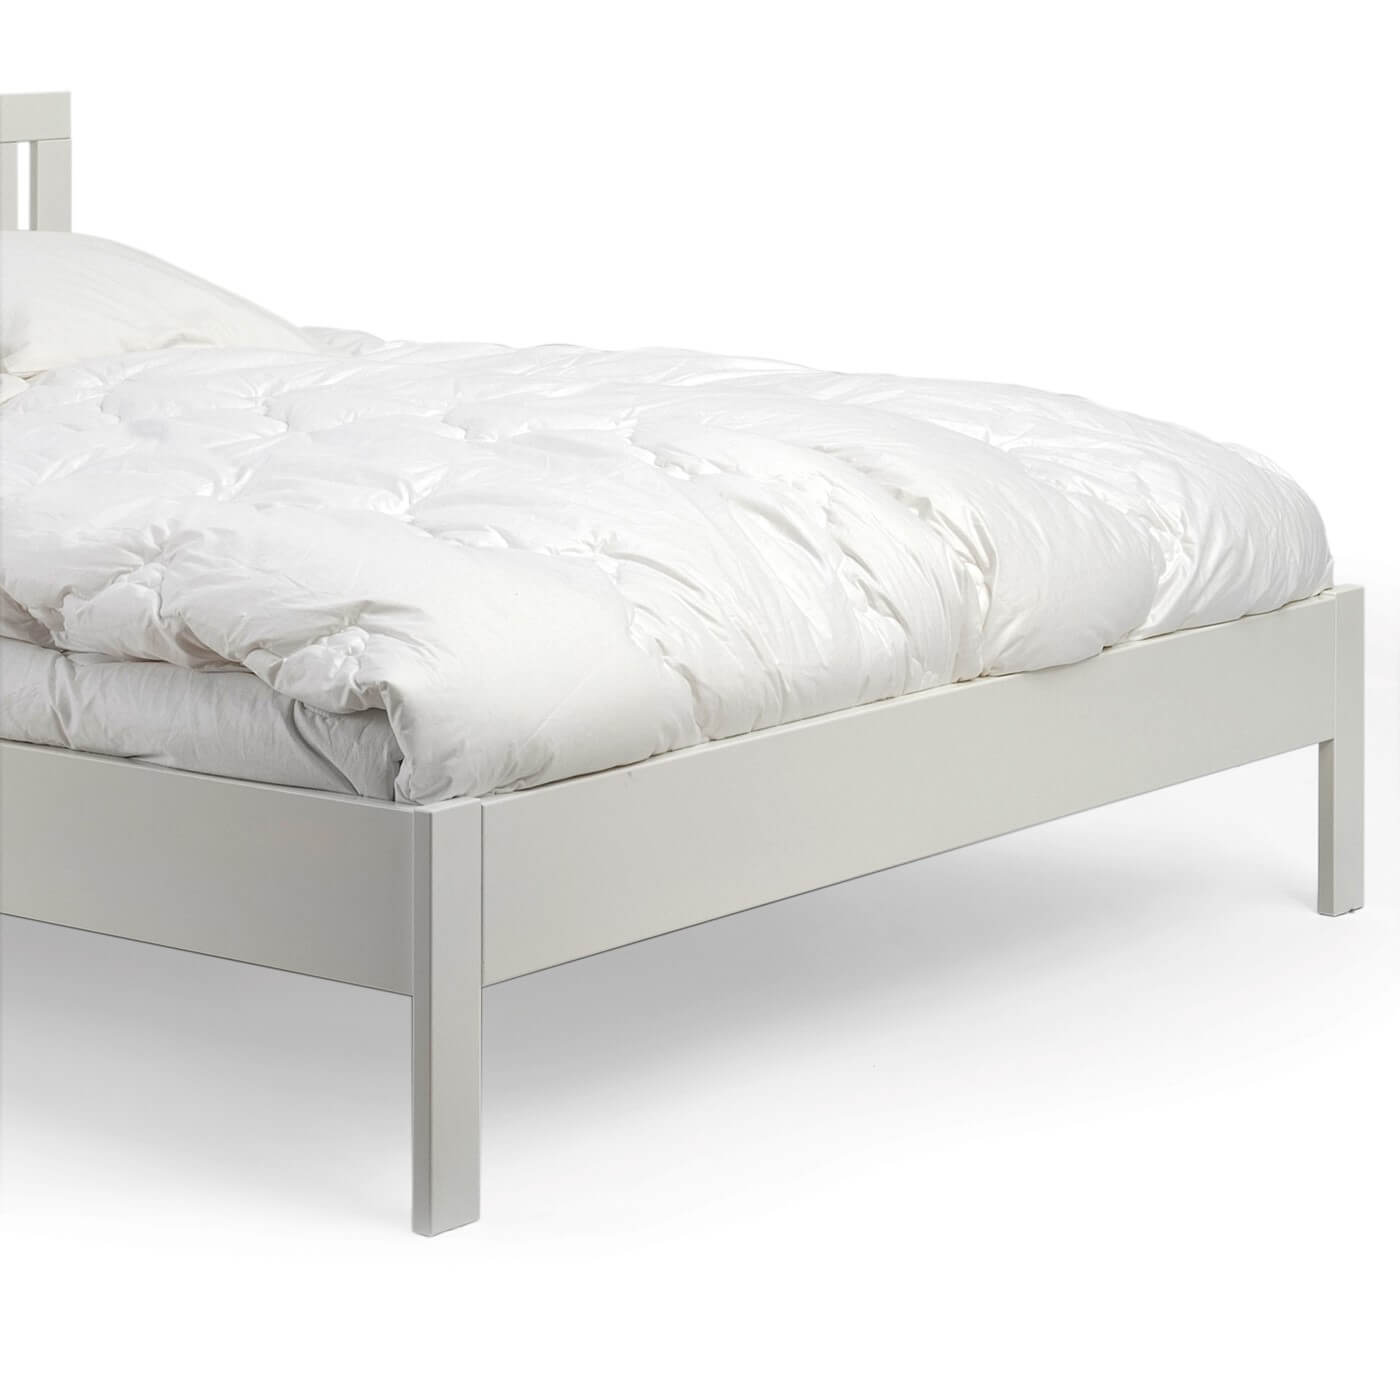 Łóżko dwuosobowe białe KOLI drewniane. Przybliżony widok na wysokie proste białe nóżki łóżka 2 osobowego 160x200 z drewna brzozy w kolorze białym. Skandynawski design